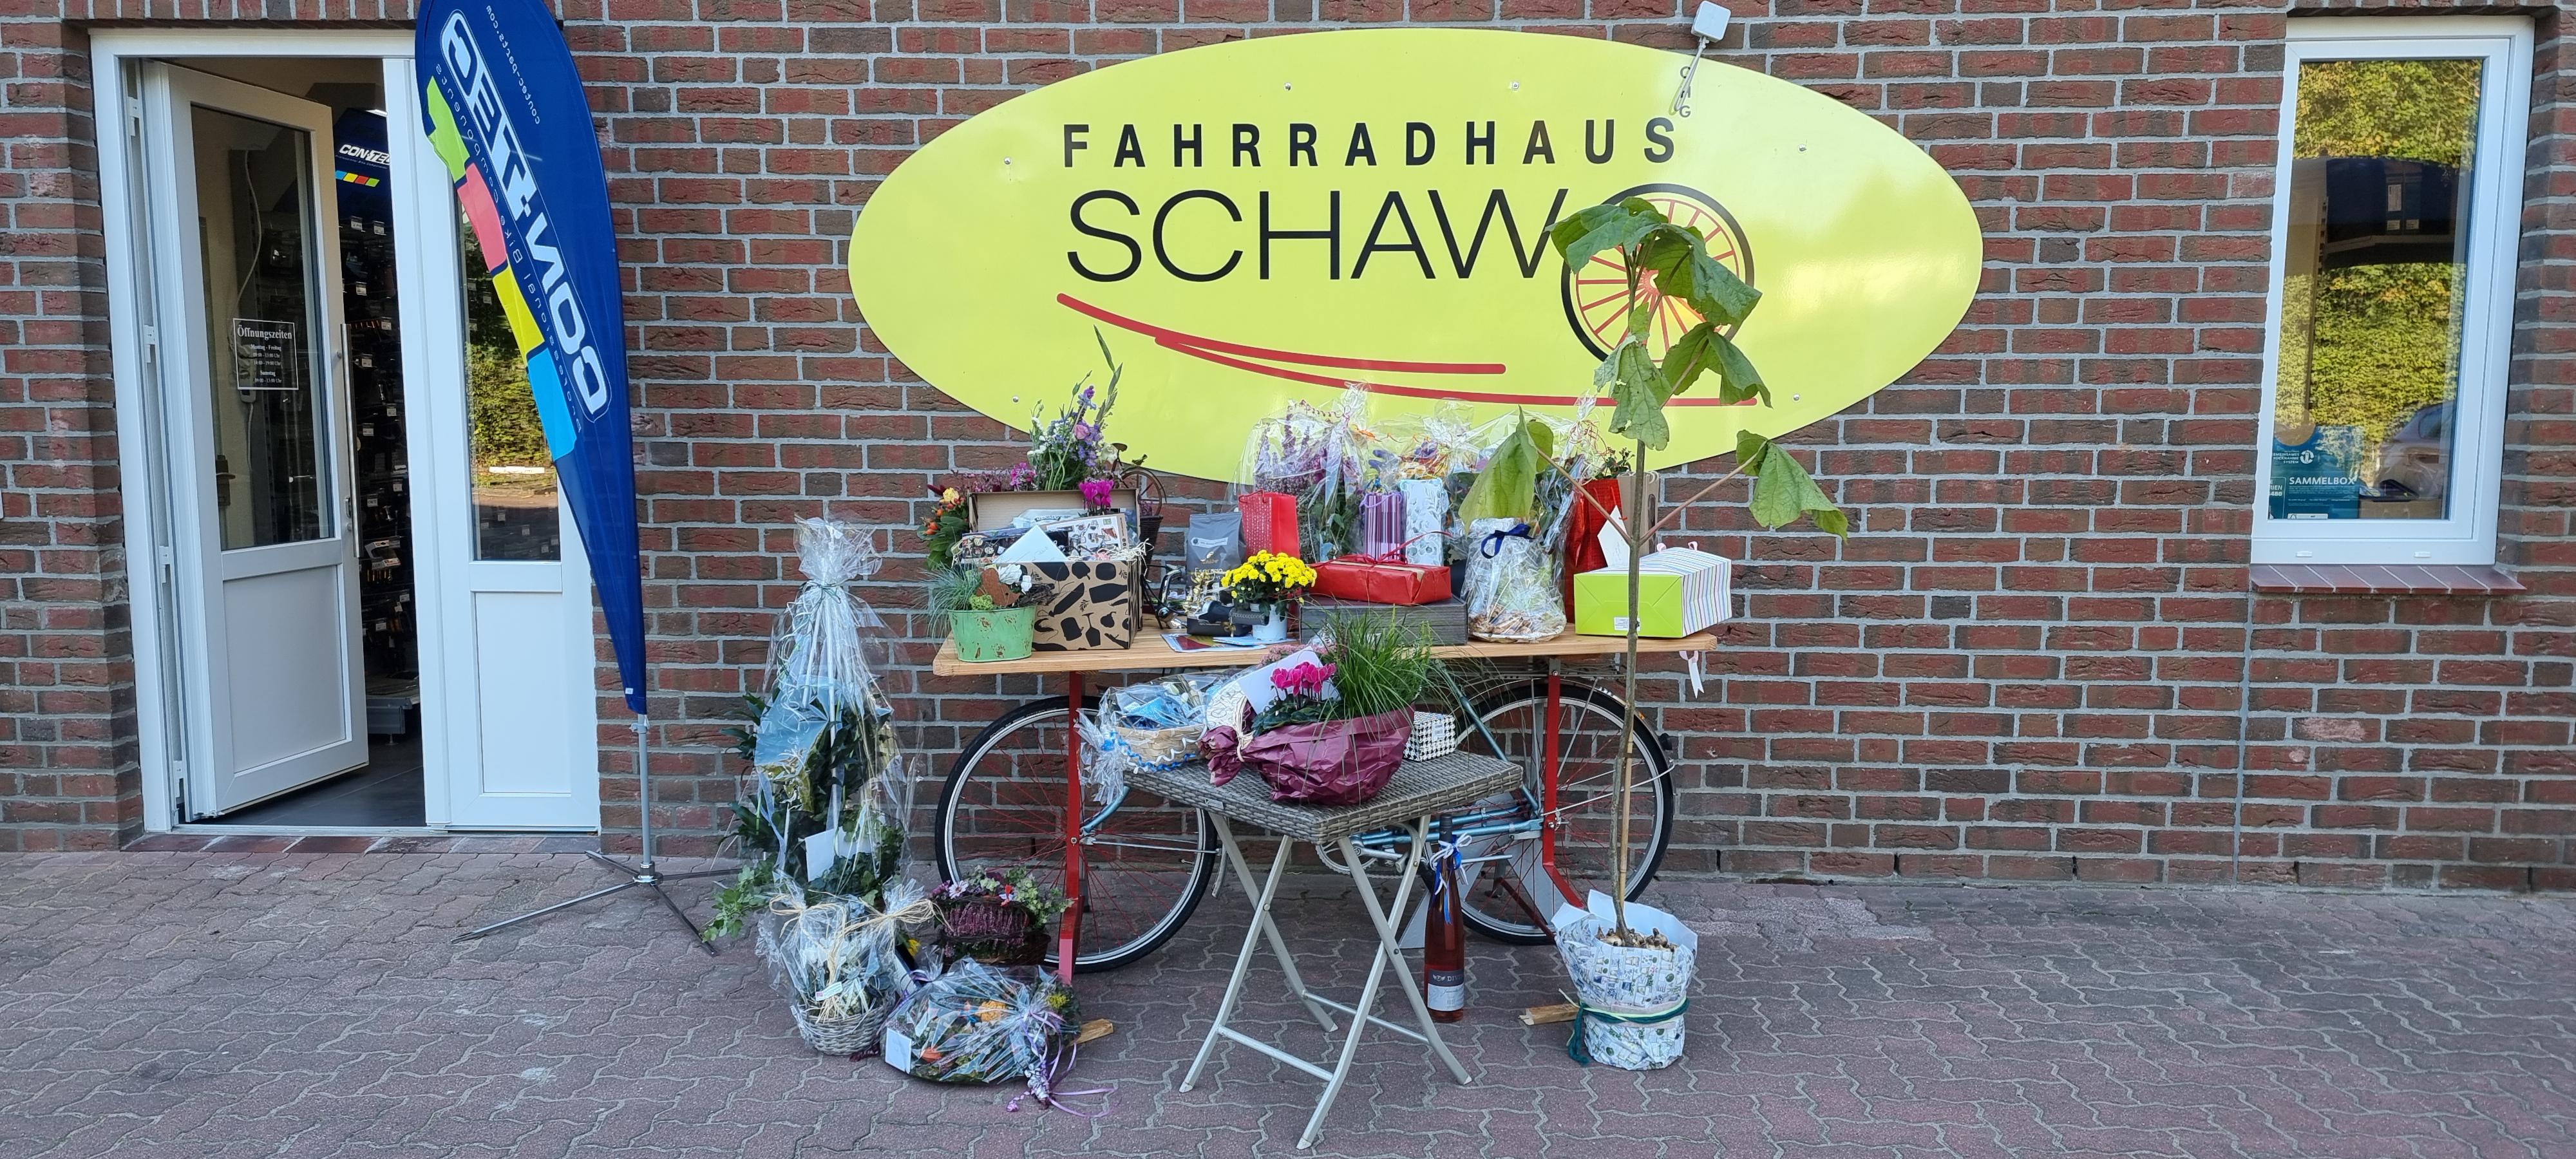 Bilder Fahrradhaus Schawo